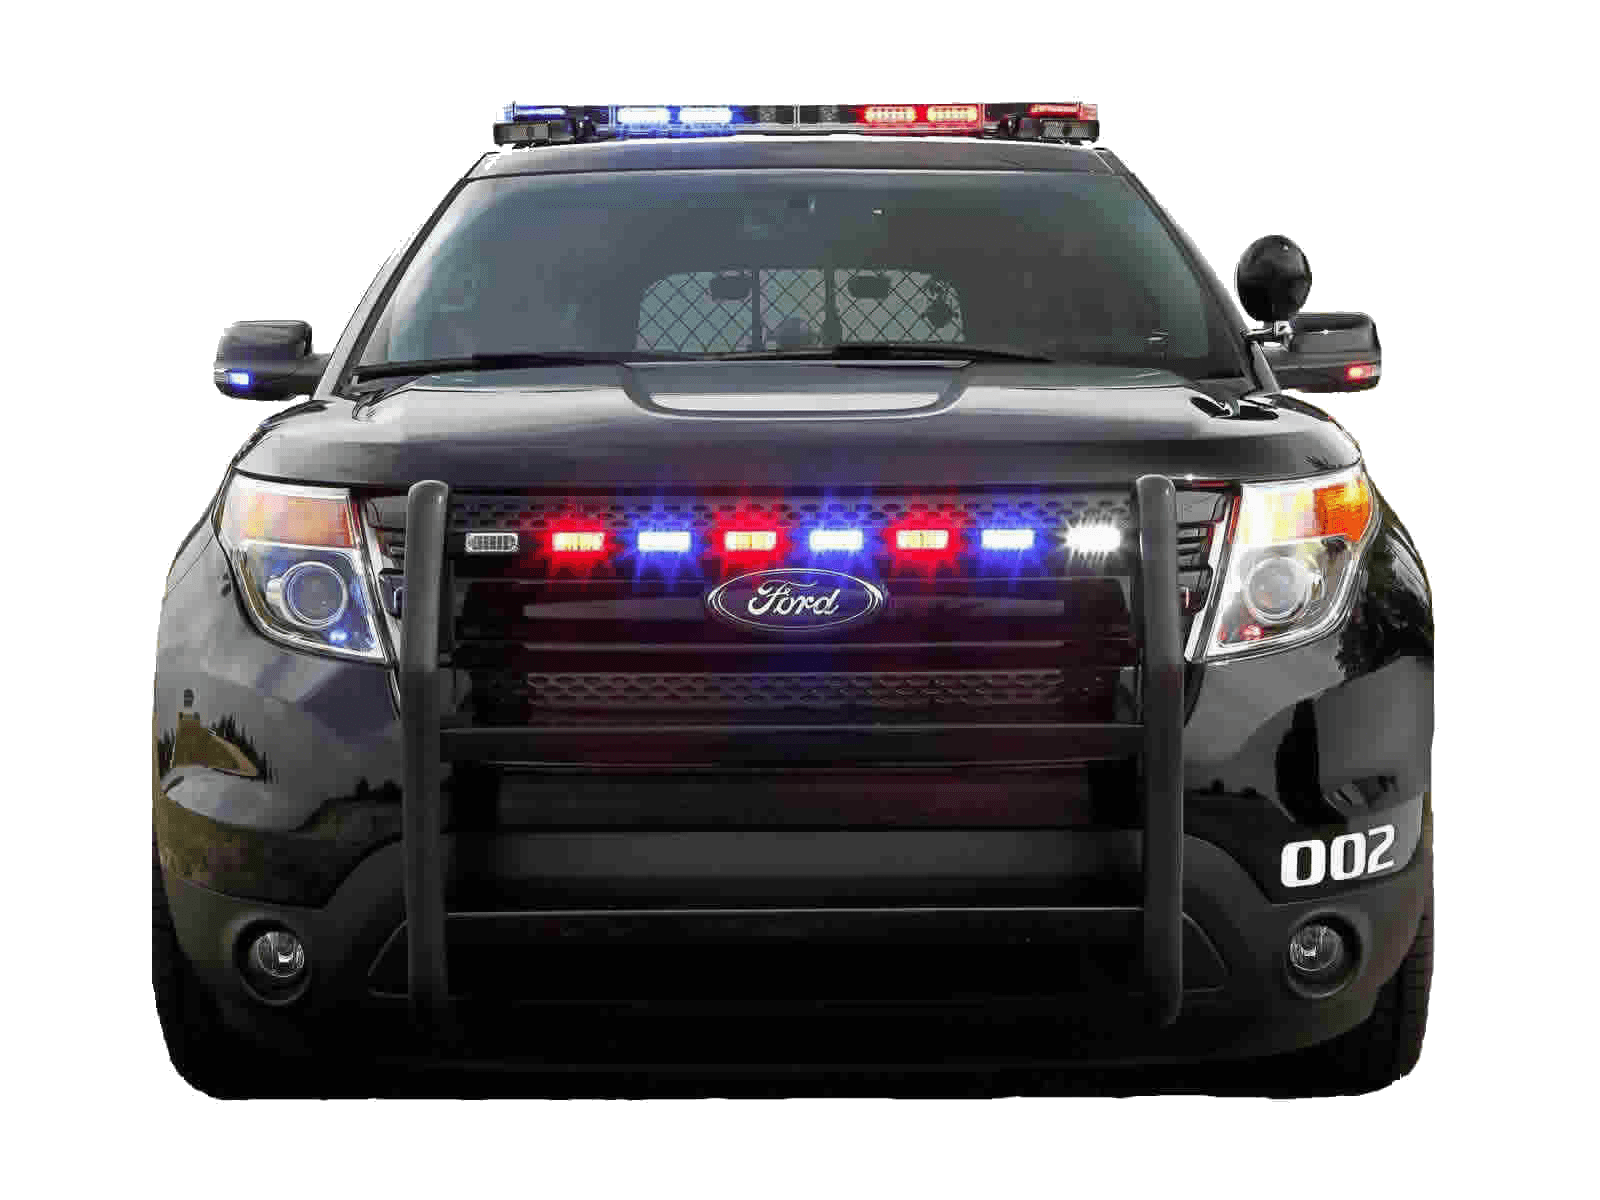 Fresh Police Car Logo Designs